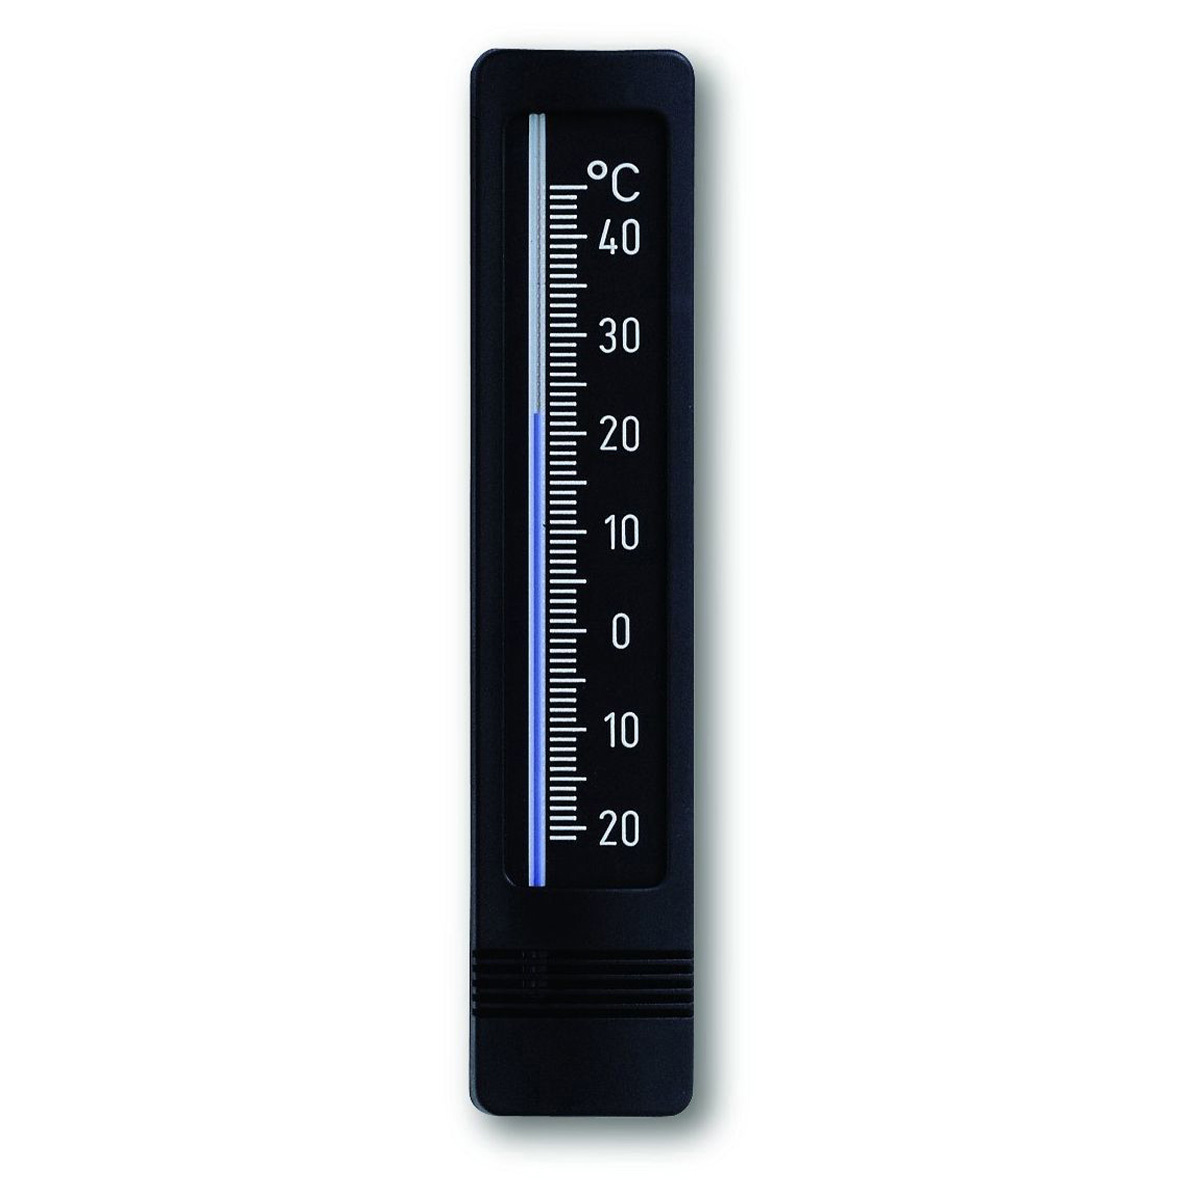 12-3022-01-analoges-innen-aussen-thermometer-1200x1200px.jpg